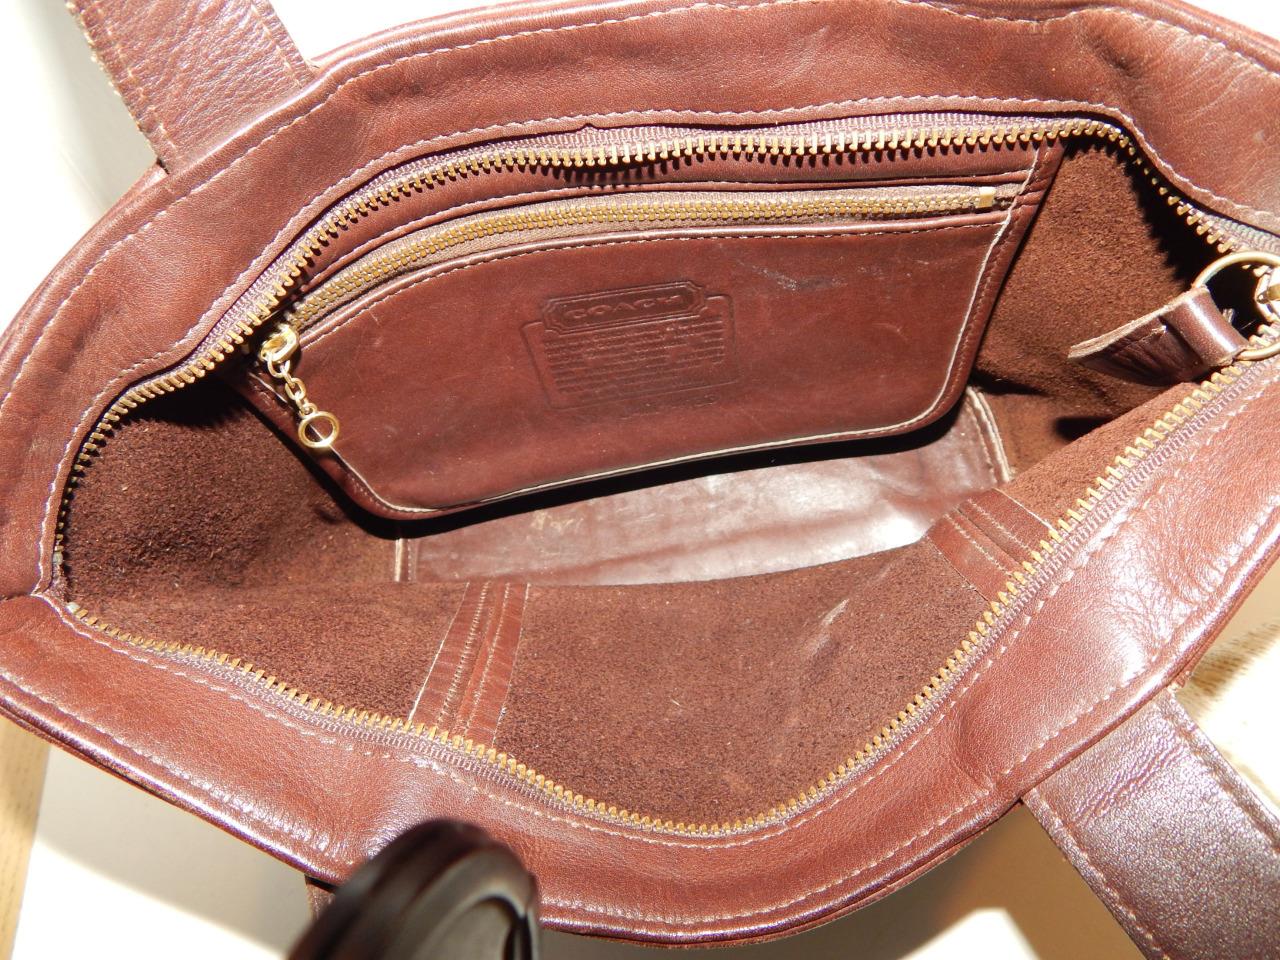 Vintage COACH 4133 Brown Leather Waverly Tote Bag Satchel Bag Handbag ...